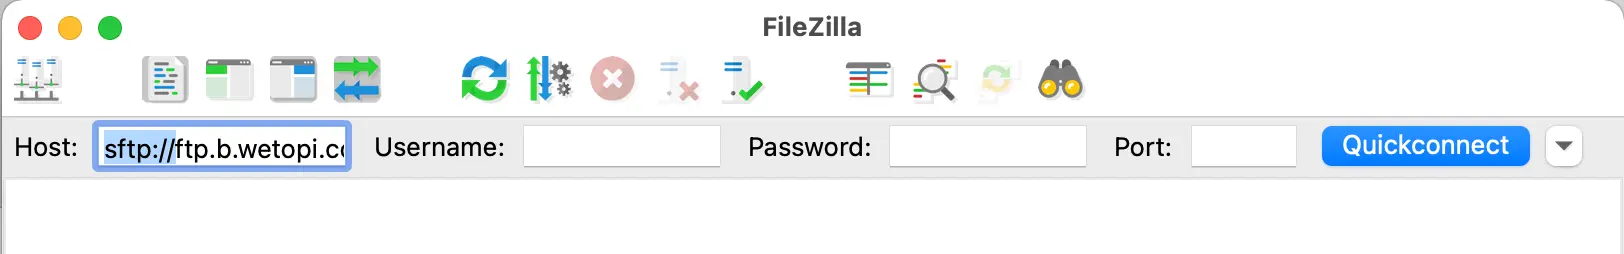 Quickconnect FileZilla fields